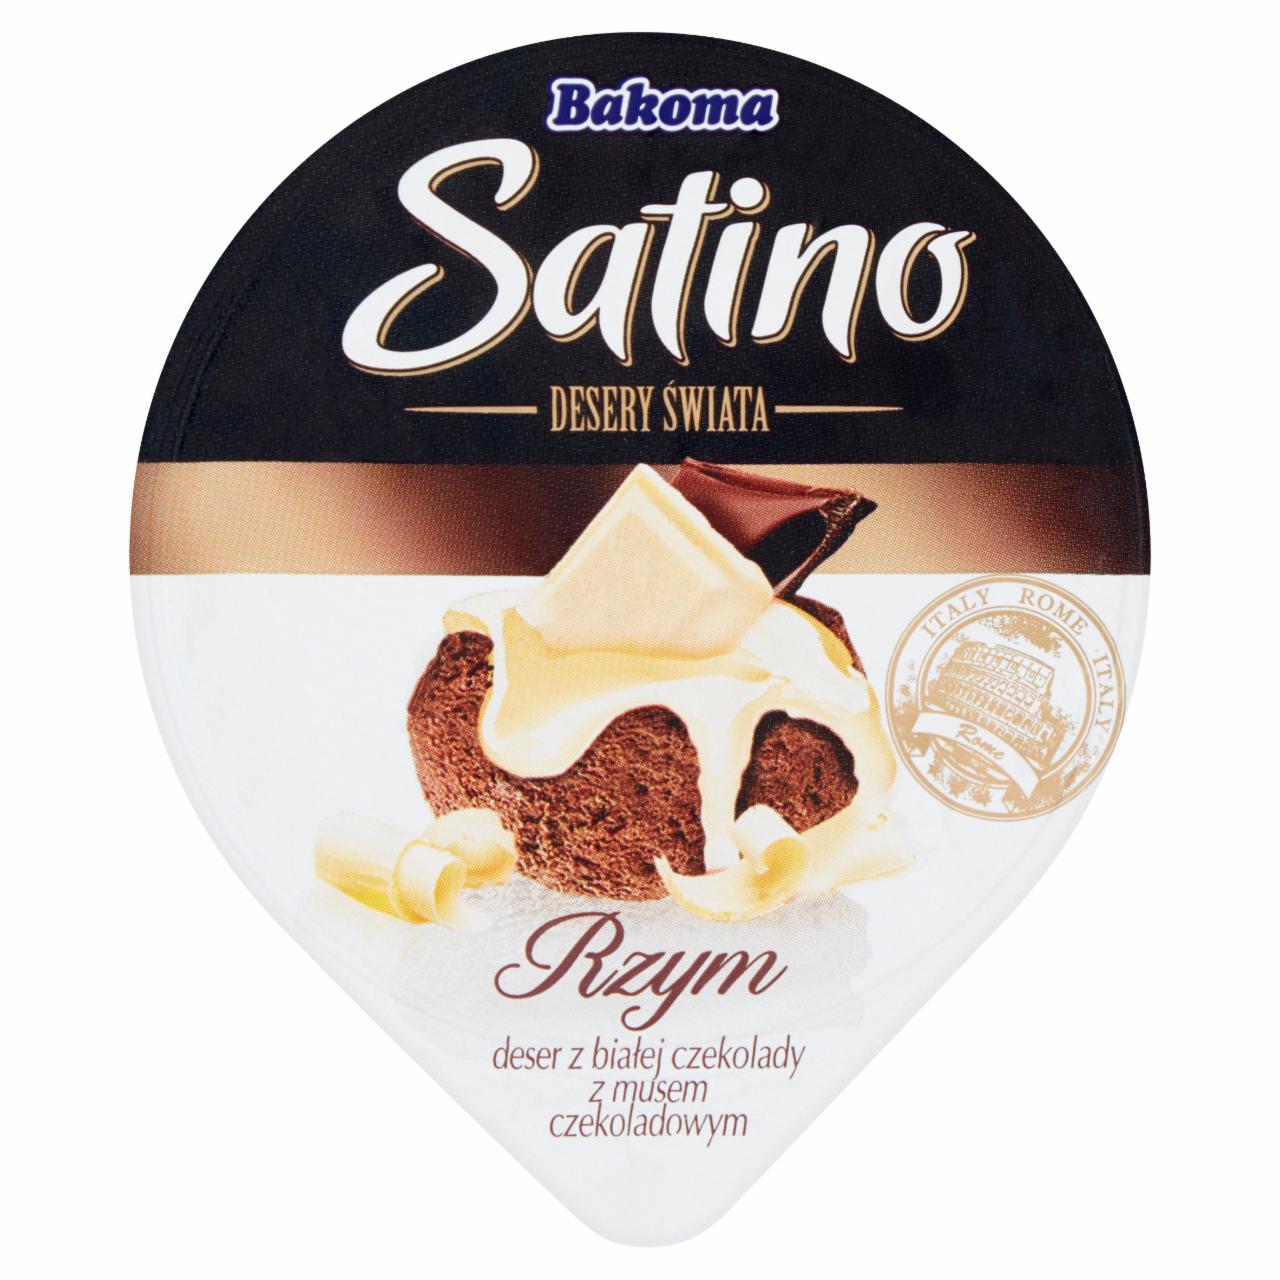 Zdjęcia - Bakoma Satino Desery Świata Rzym Deser z białej czekolady z musem czekoladowym 105 g